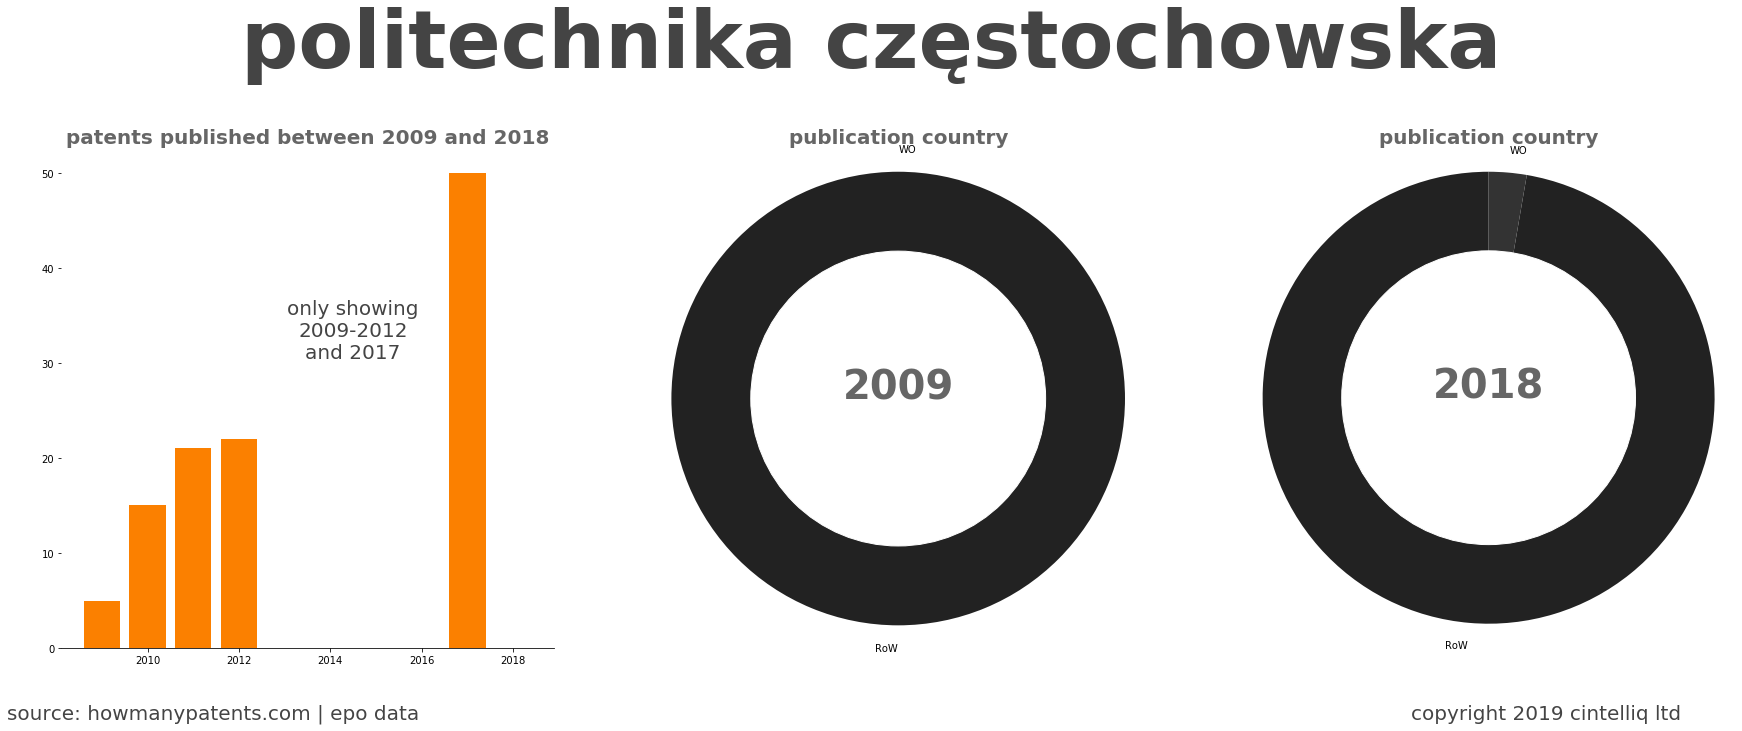 summary of patents for Politechnika Częstochowska